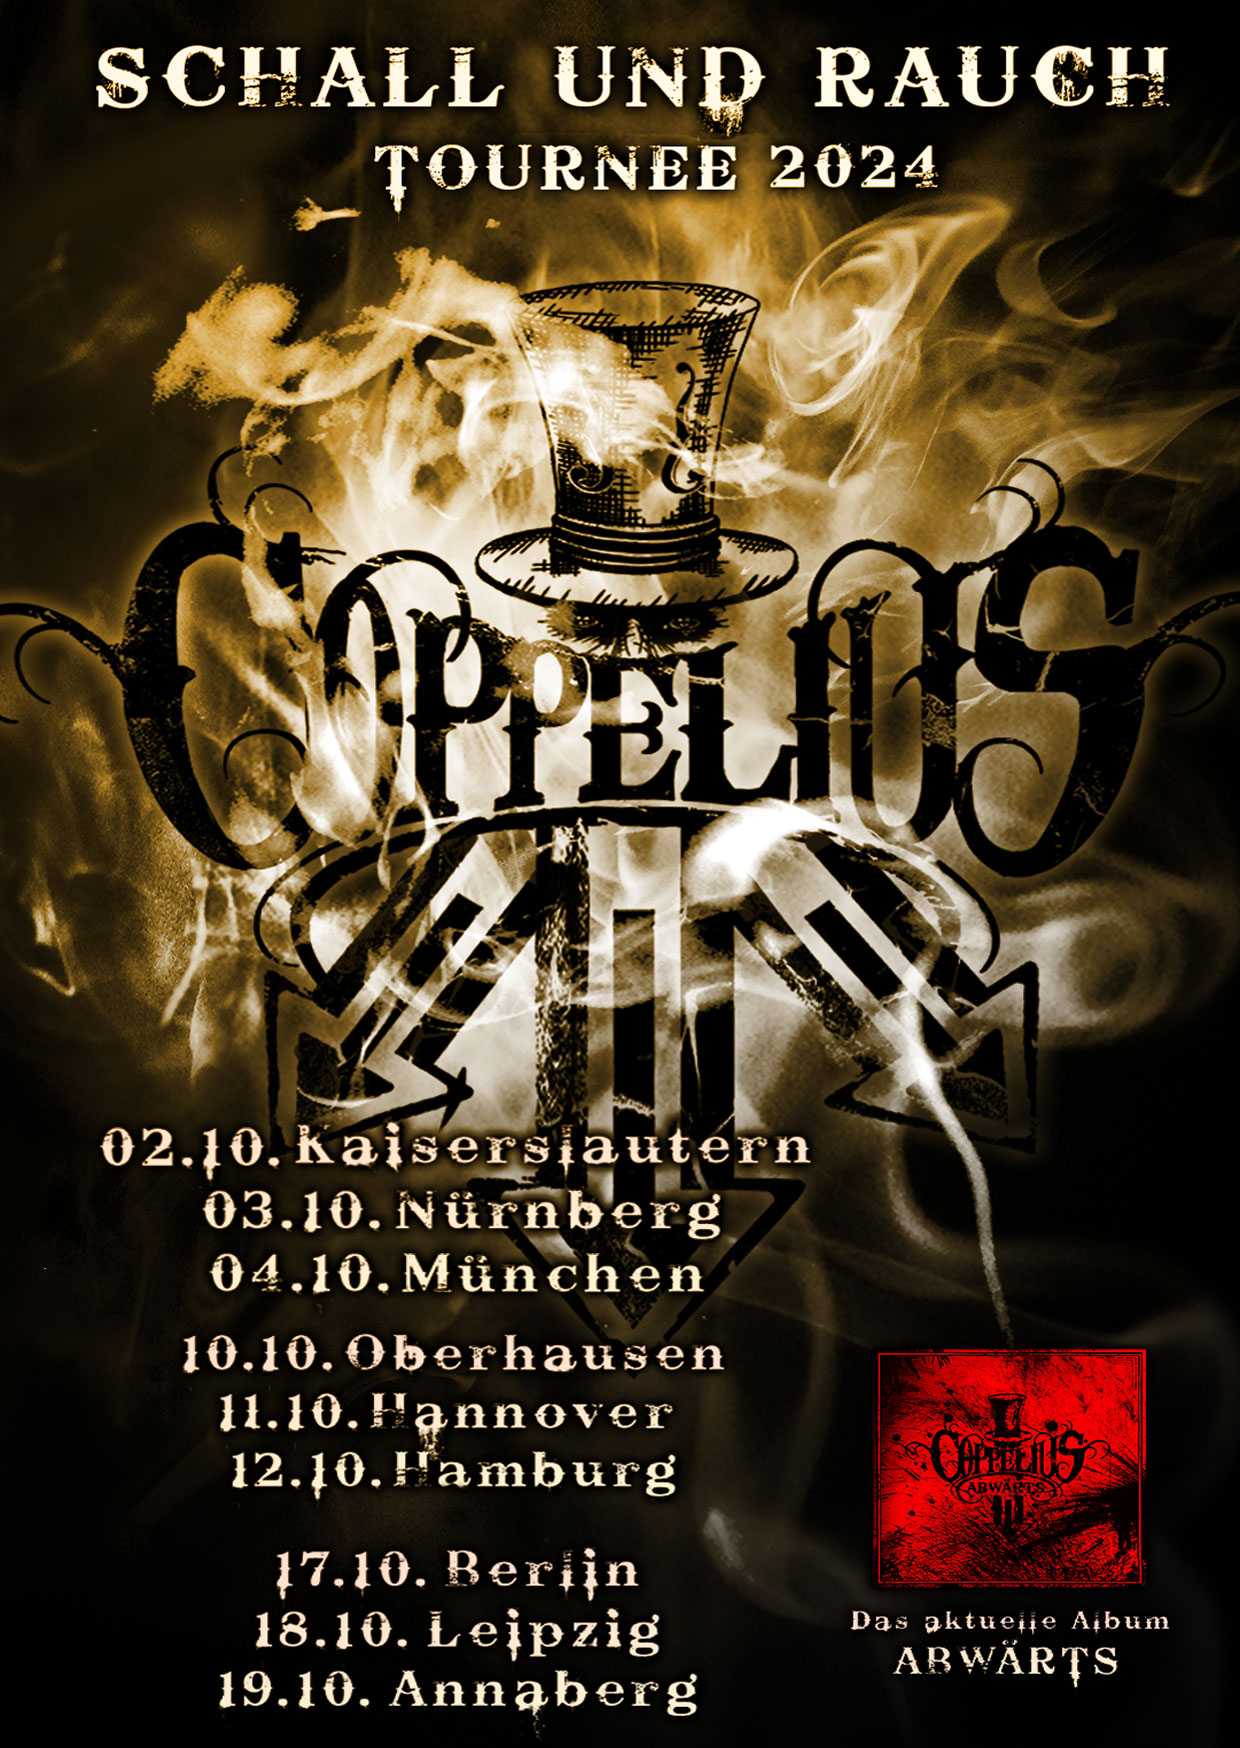 Coppelius - Schall Rauch Tournee 2024 in der MusikZentrum Hannover Tickets